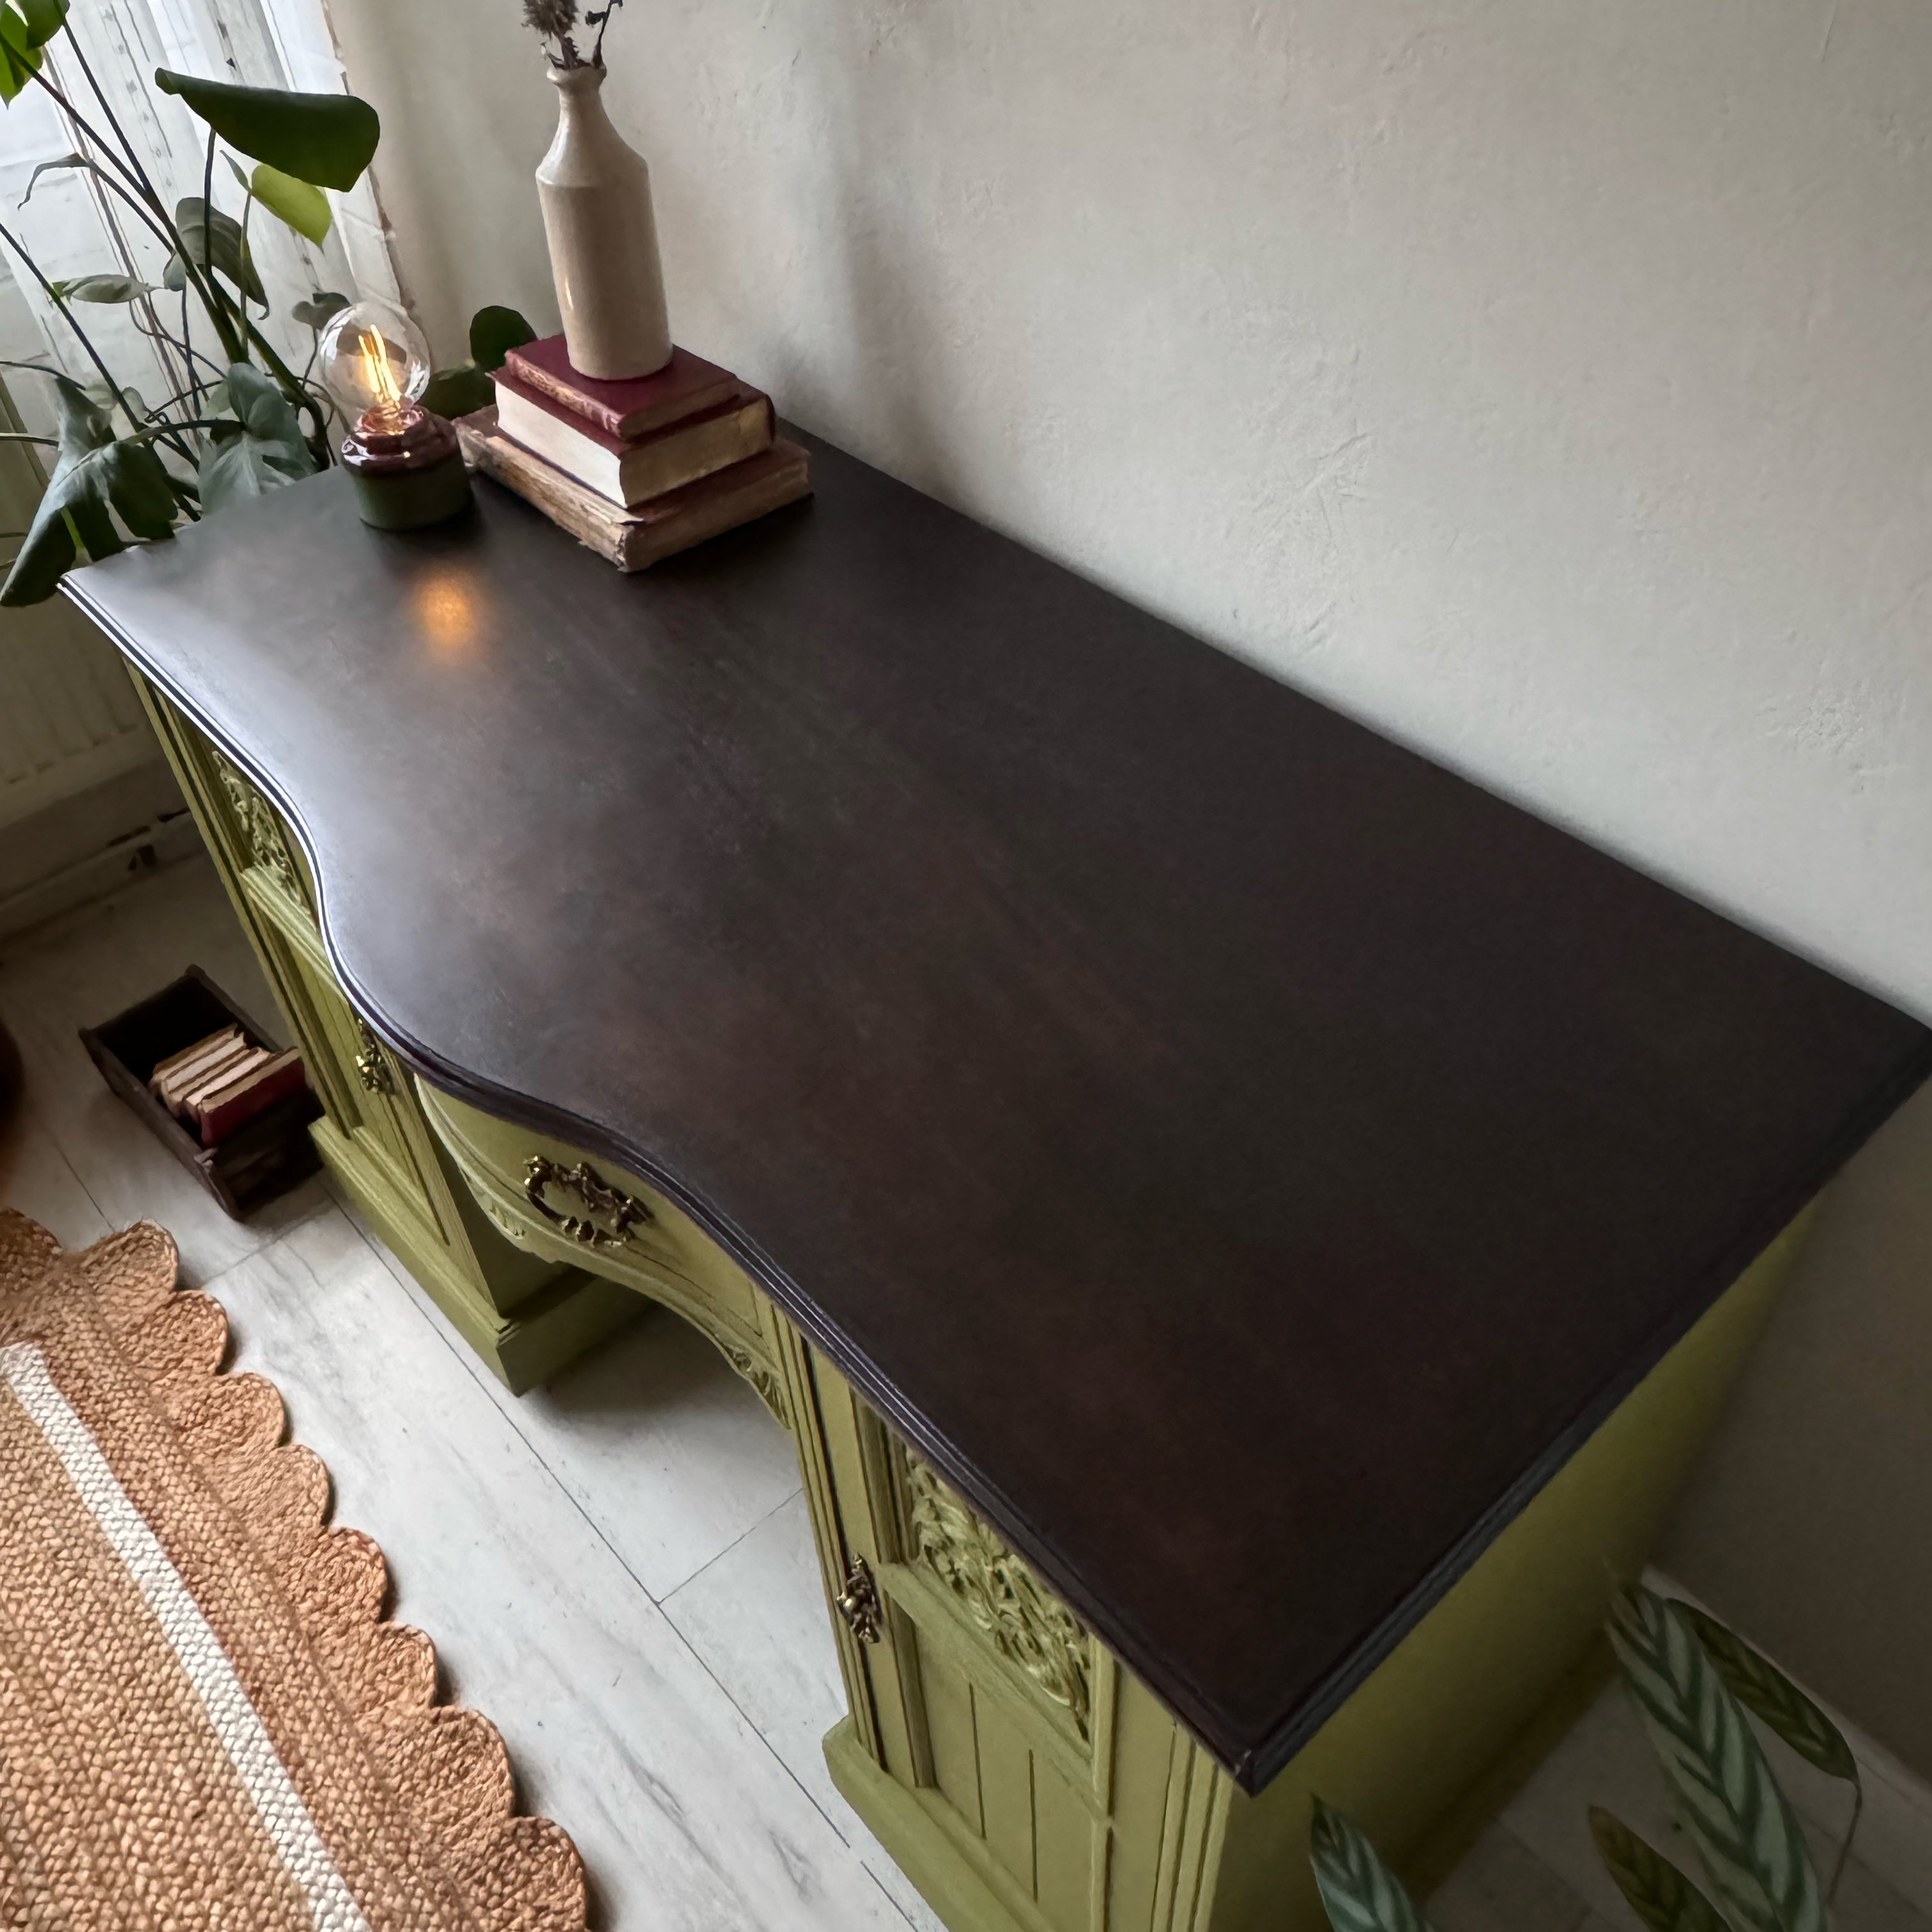 Decorative Green Desk